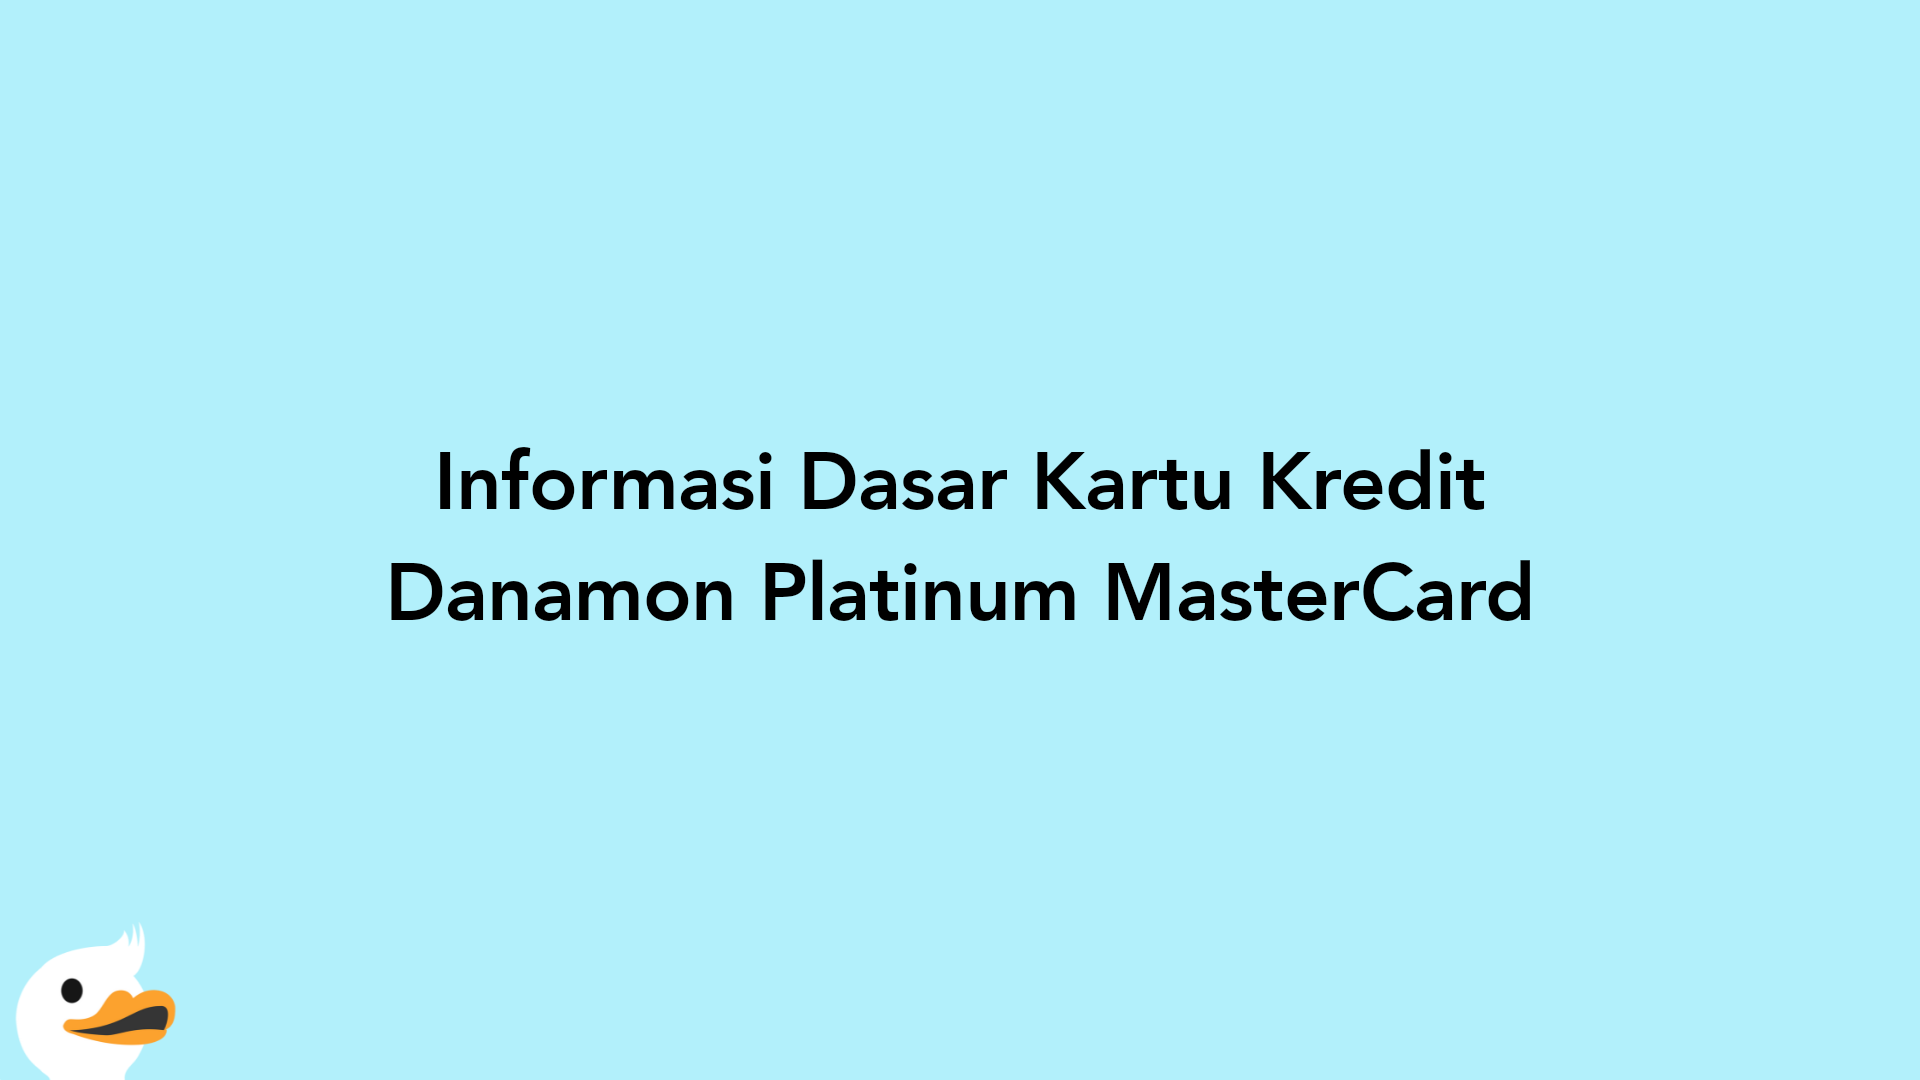 Informasi Dasar Kartu Kredit Danamon Platinum MasterCard